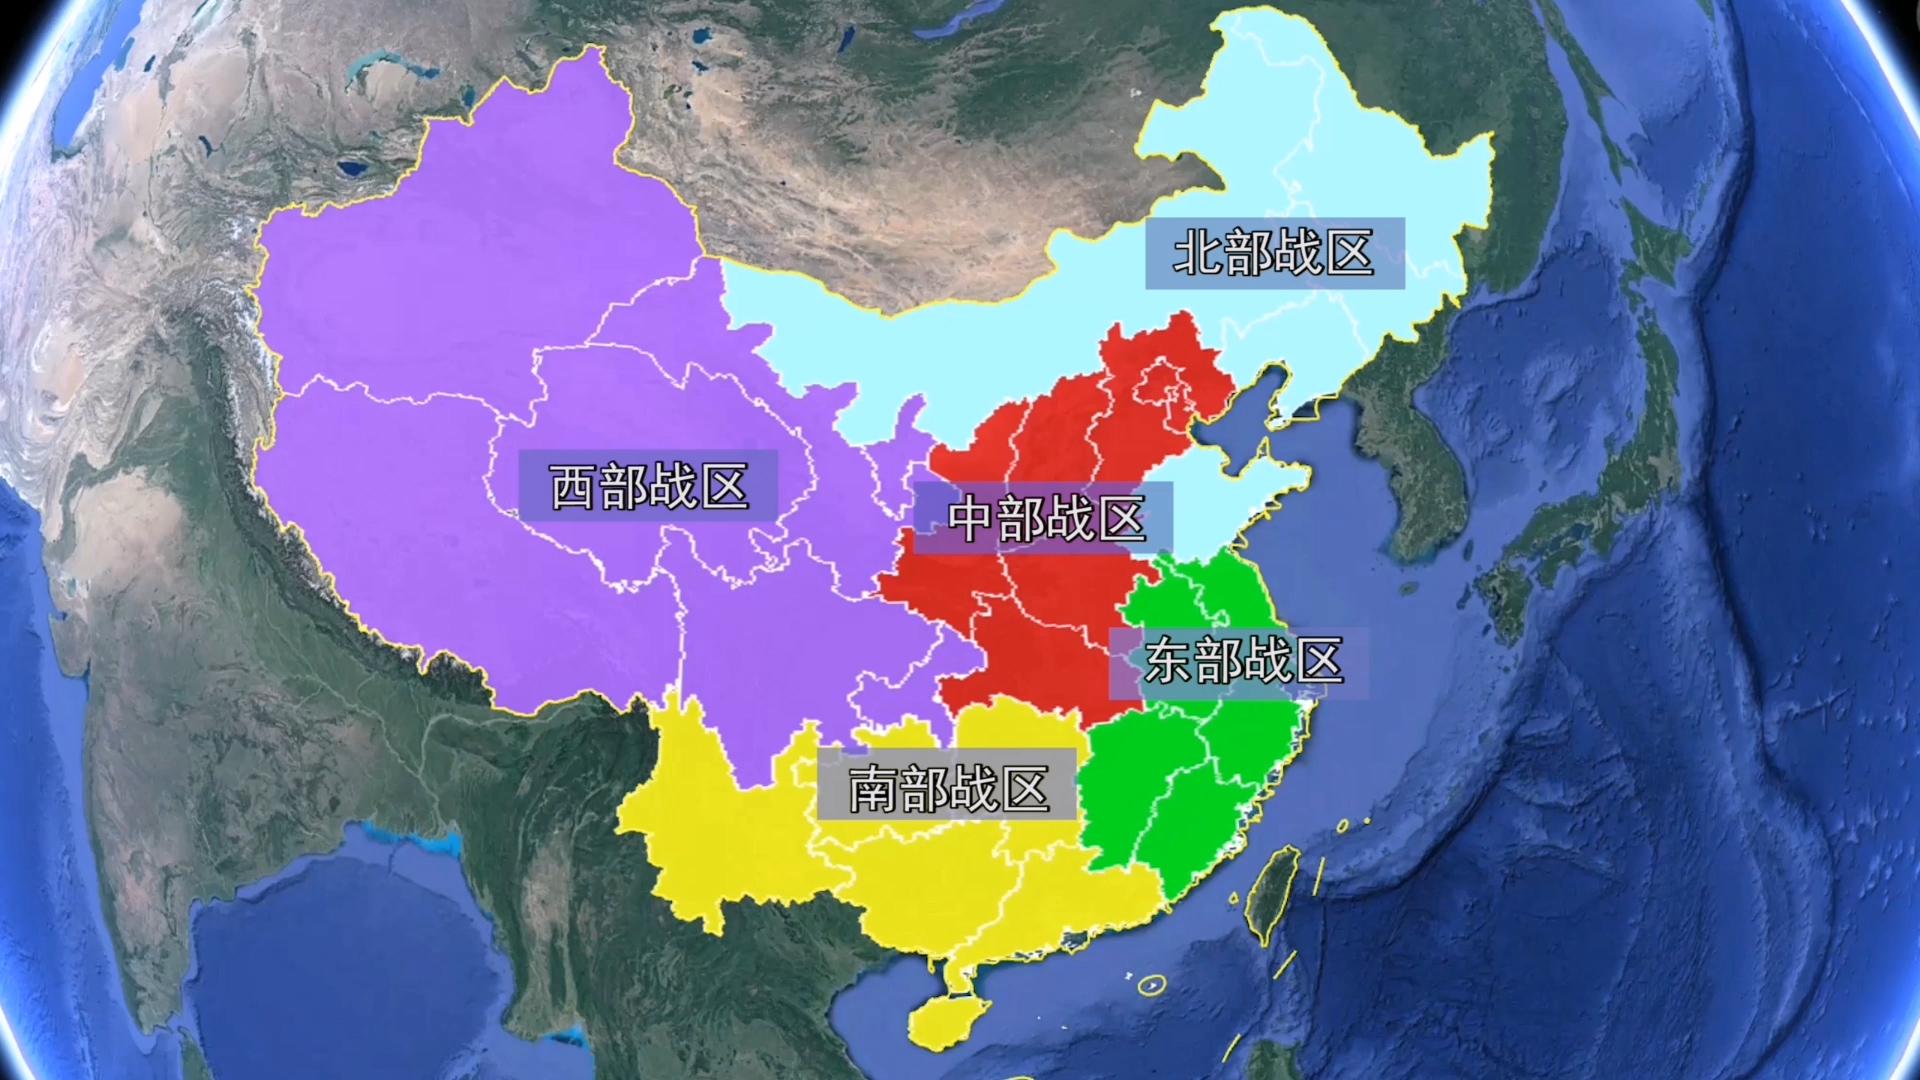 华东、华北、华南、东北等地区如何划分？为什么这样分？有什么地理、政治、经济意义吗？ - 知乎